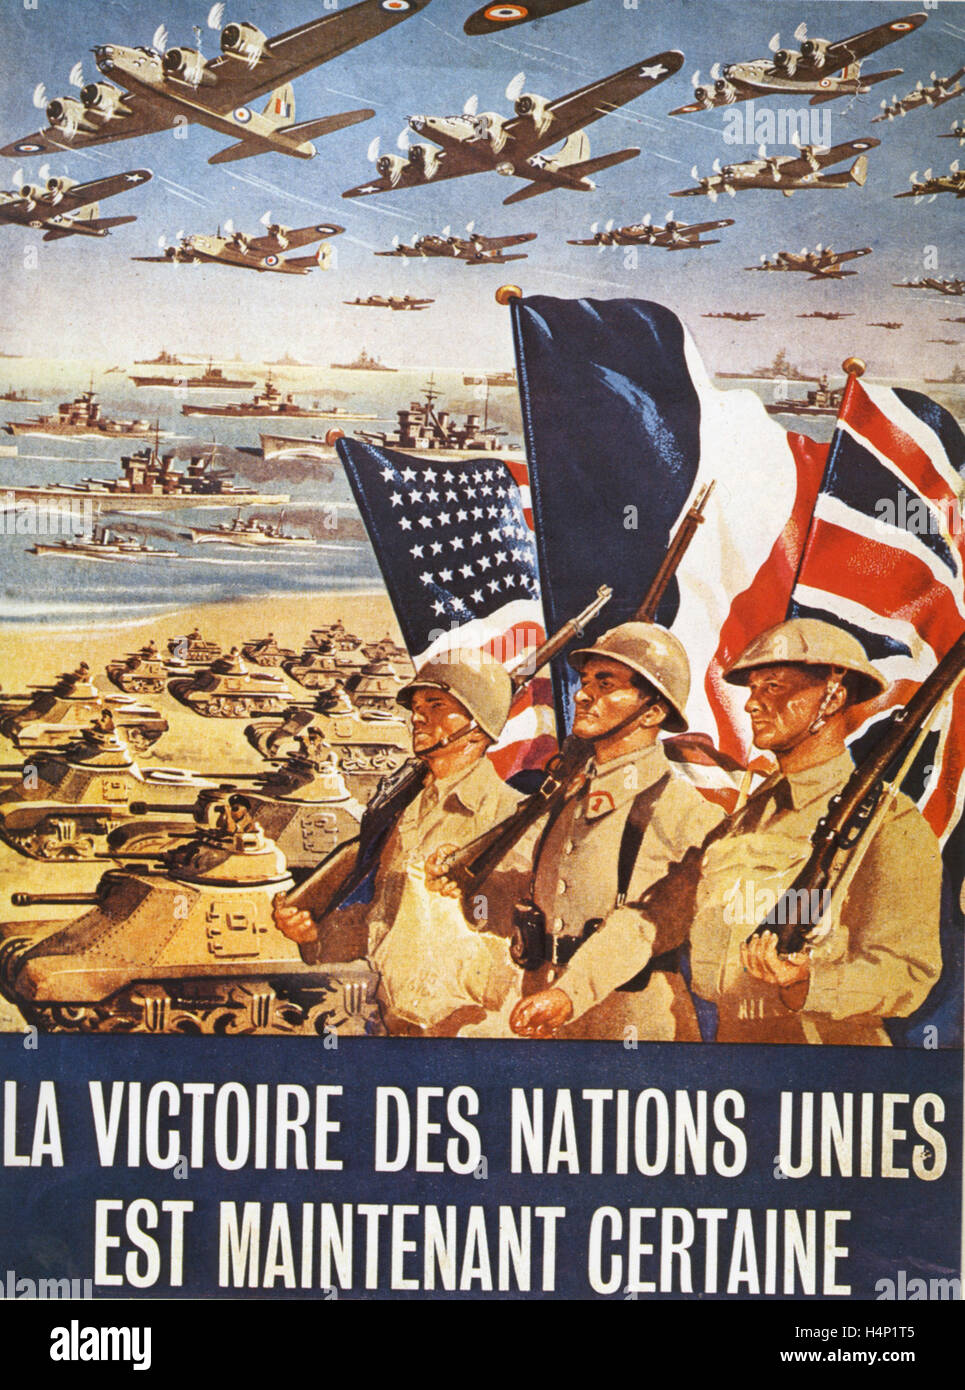 LA VICTOIRE DES NATIONS UNIES EST MAINTENANT CERTAINE französische Sprache Poster zu 1945. Genaues Datum und Künstler unbekannt Stockfoto